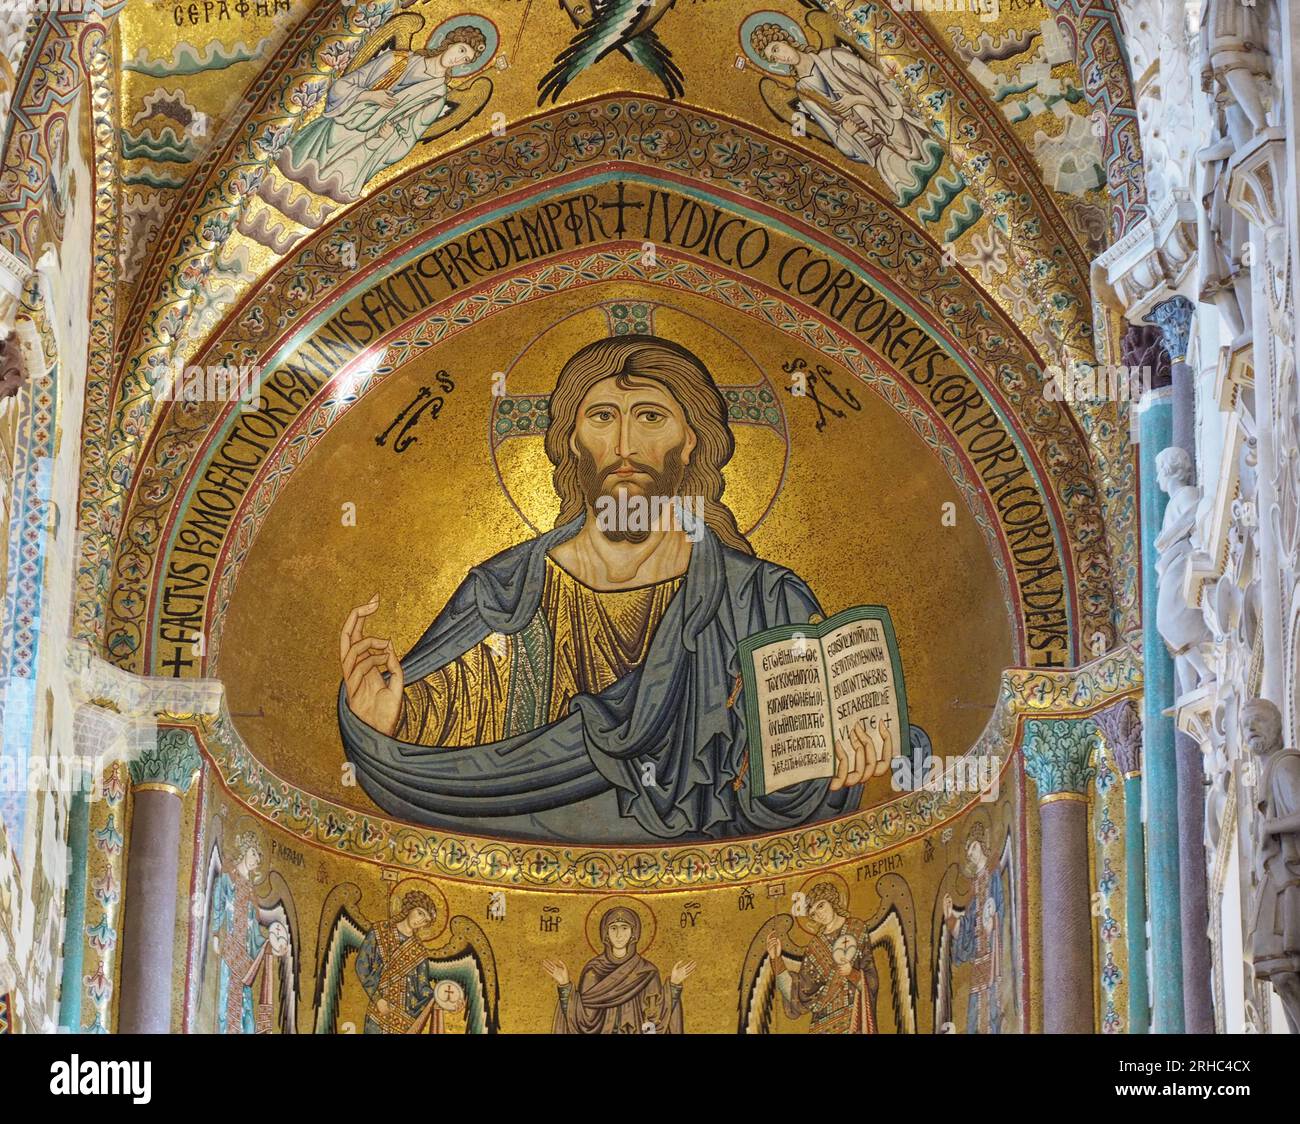 Das Mosaik in der Apsis der Kathedrale von Cefalu zeigt Christus Pantokrator. Die Figur trägt das Johannesevangelium in seiner linken Hand. Stockfoto